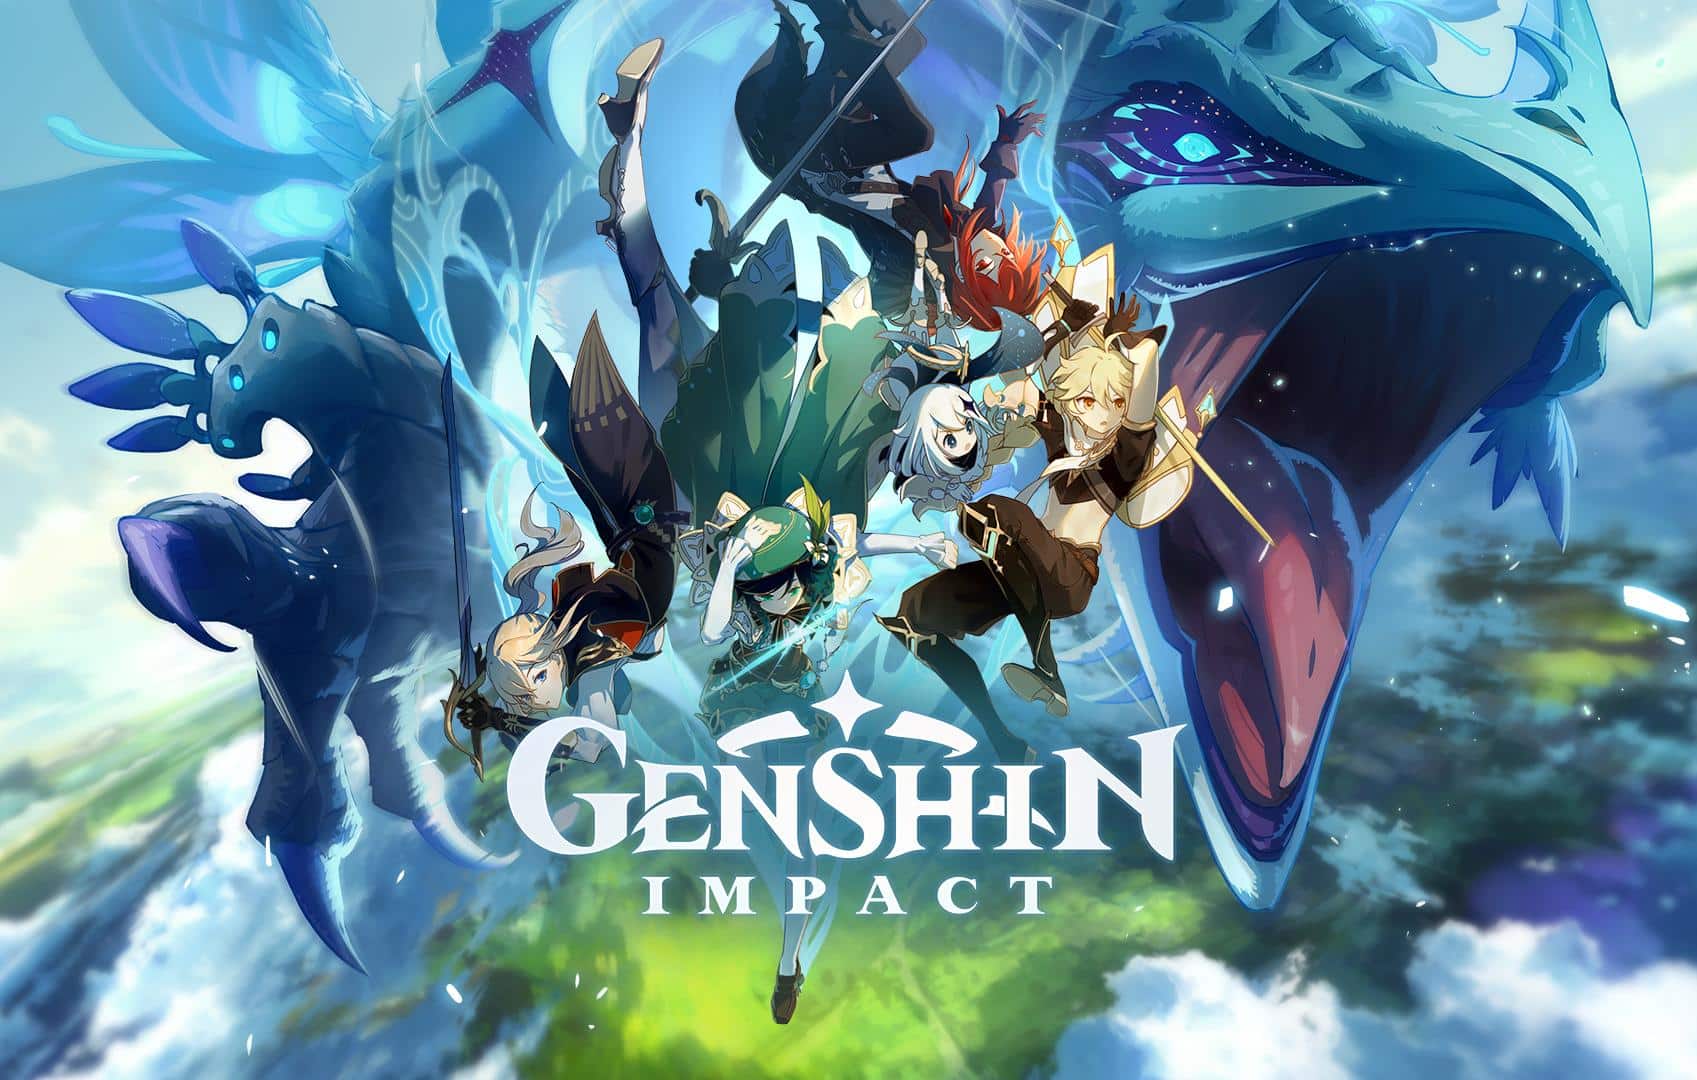 Genshin Impact': como baixar o jogo em smartphones Android - Olhar Digital